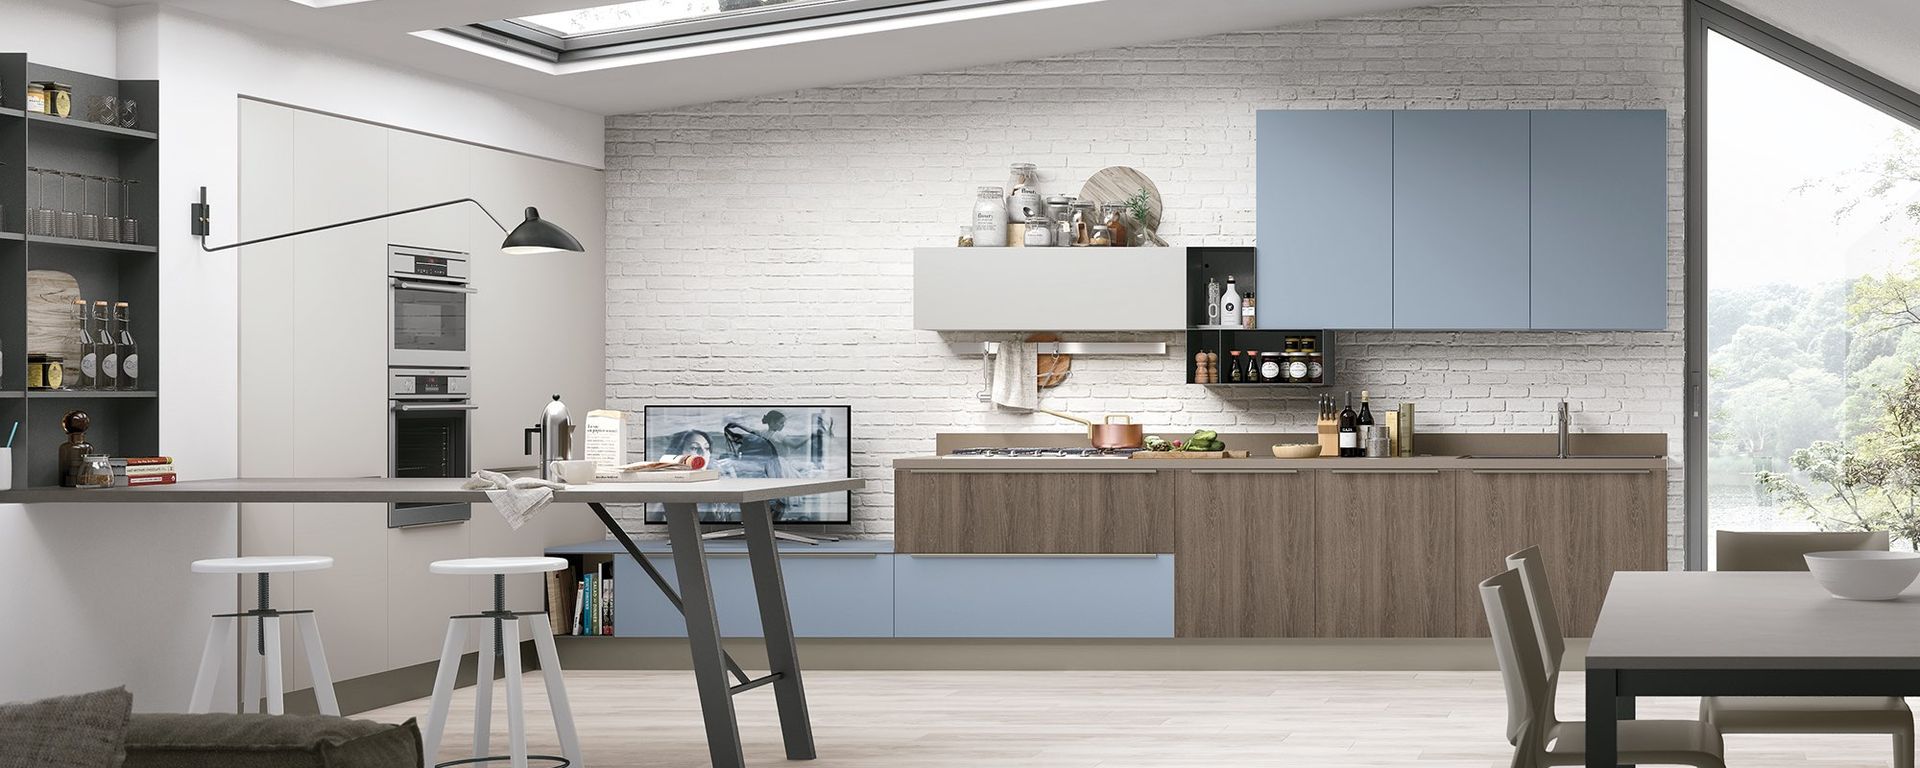 cucina classica con mobili color legno ed azzurri